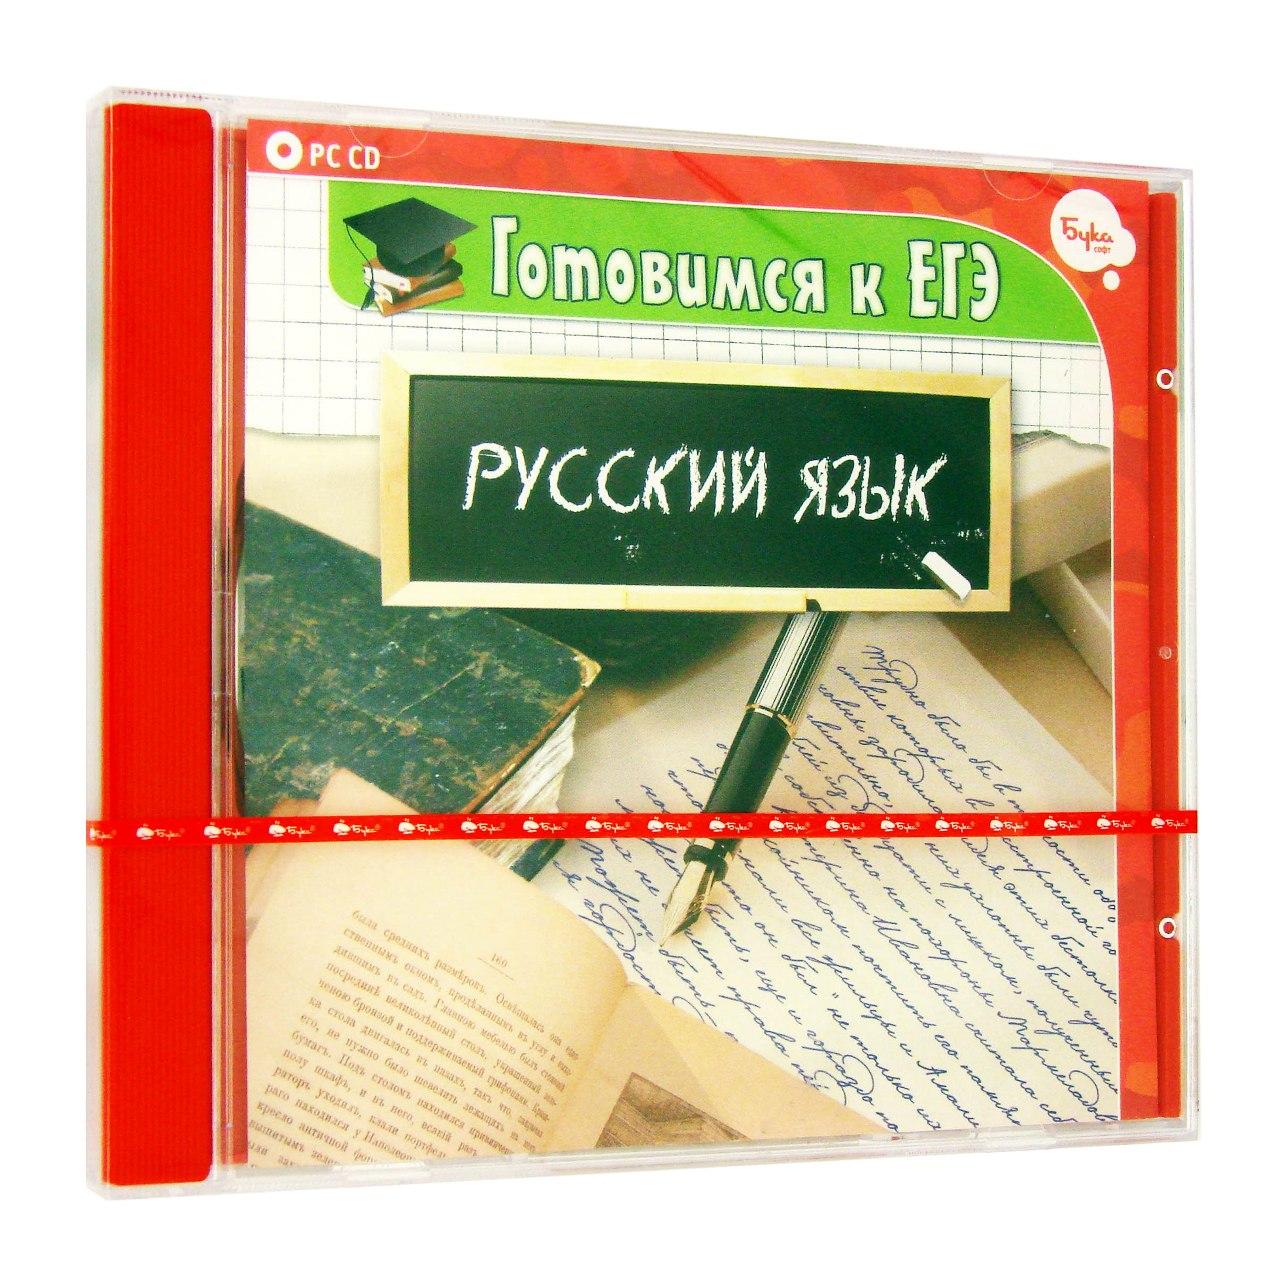 Компьютерный компакт-диск Готовимся к ЕГЭ. Русский язык (ПК), фирма "Бука", 1CD